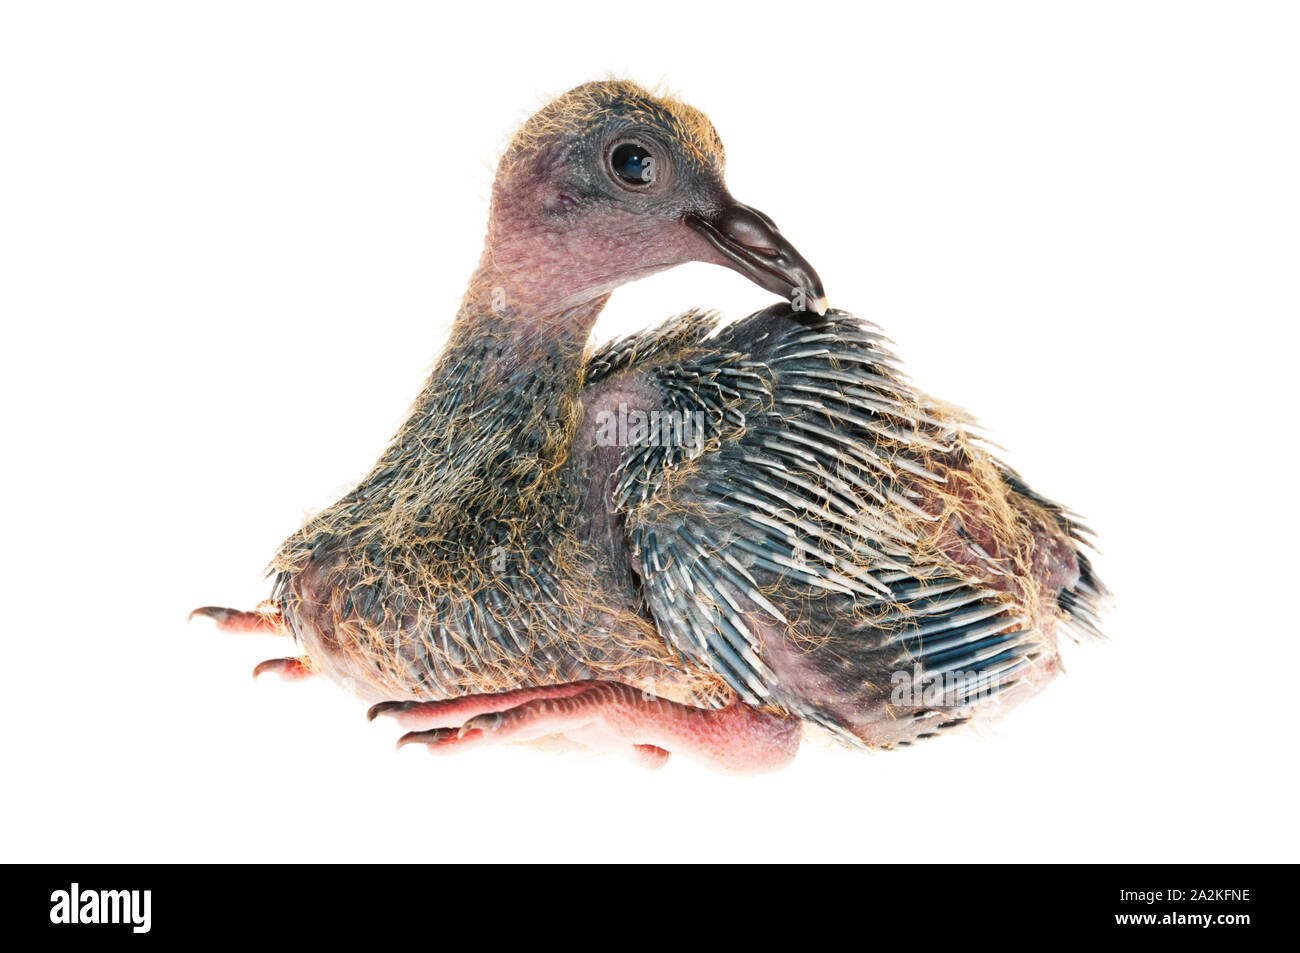 Baby Pigeon Banque D Image Et Photos Alamy